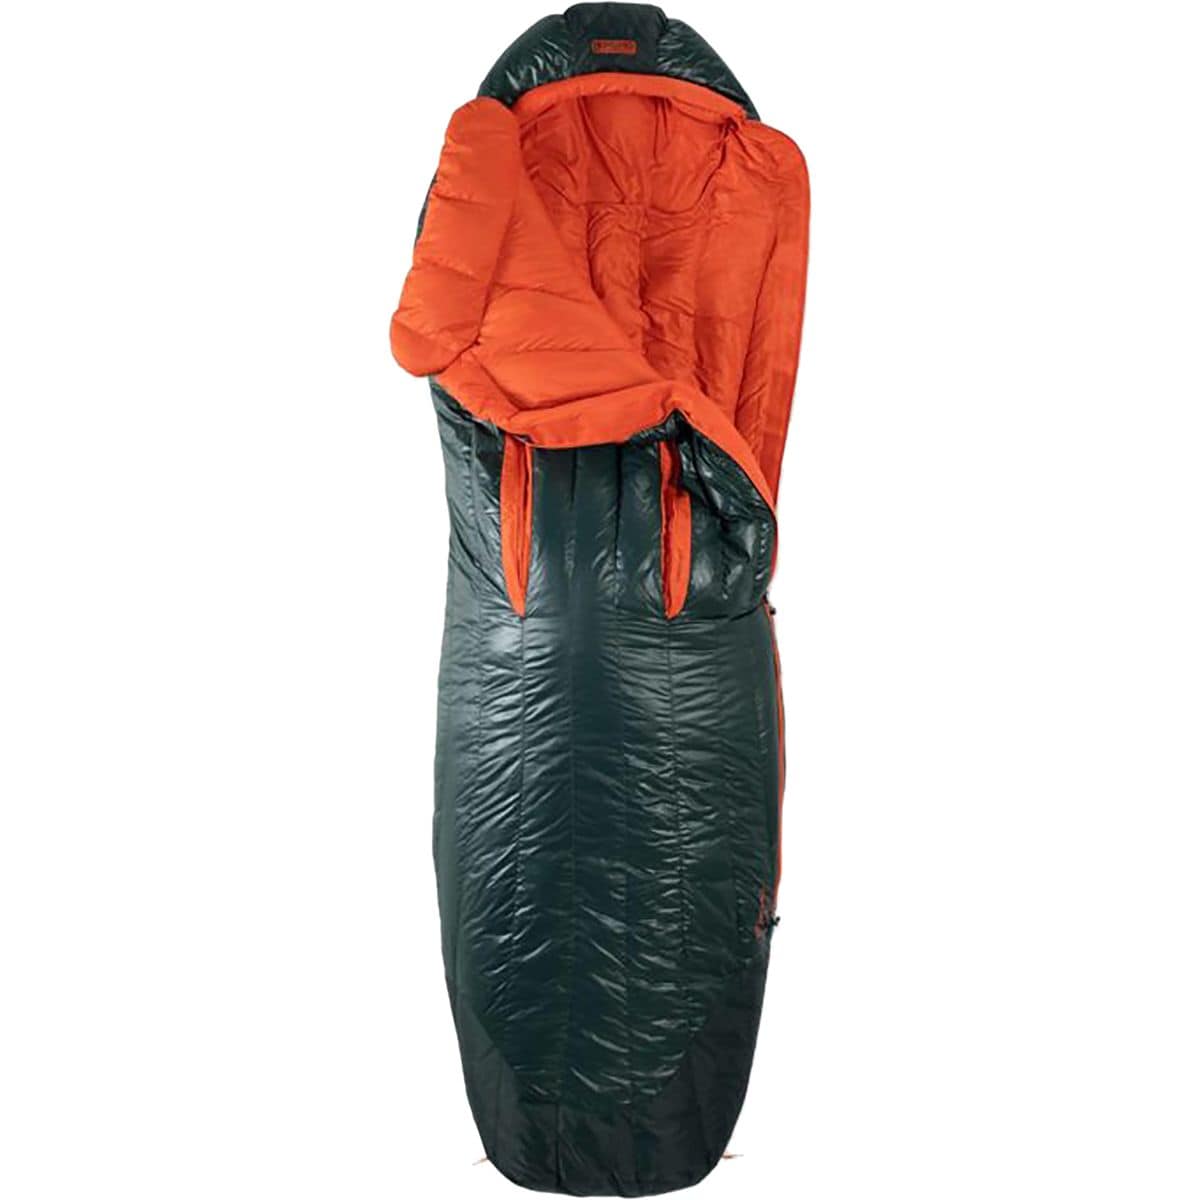  NEMO Equipment Inc. Riff 15 Sleeping Bag: 15F Down